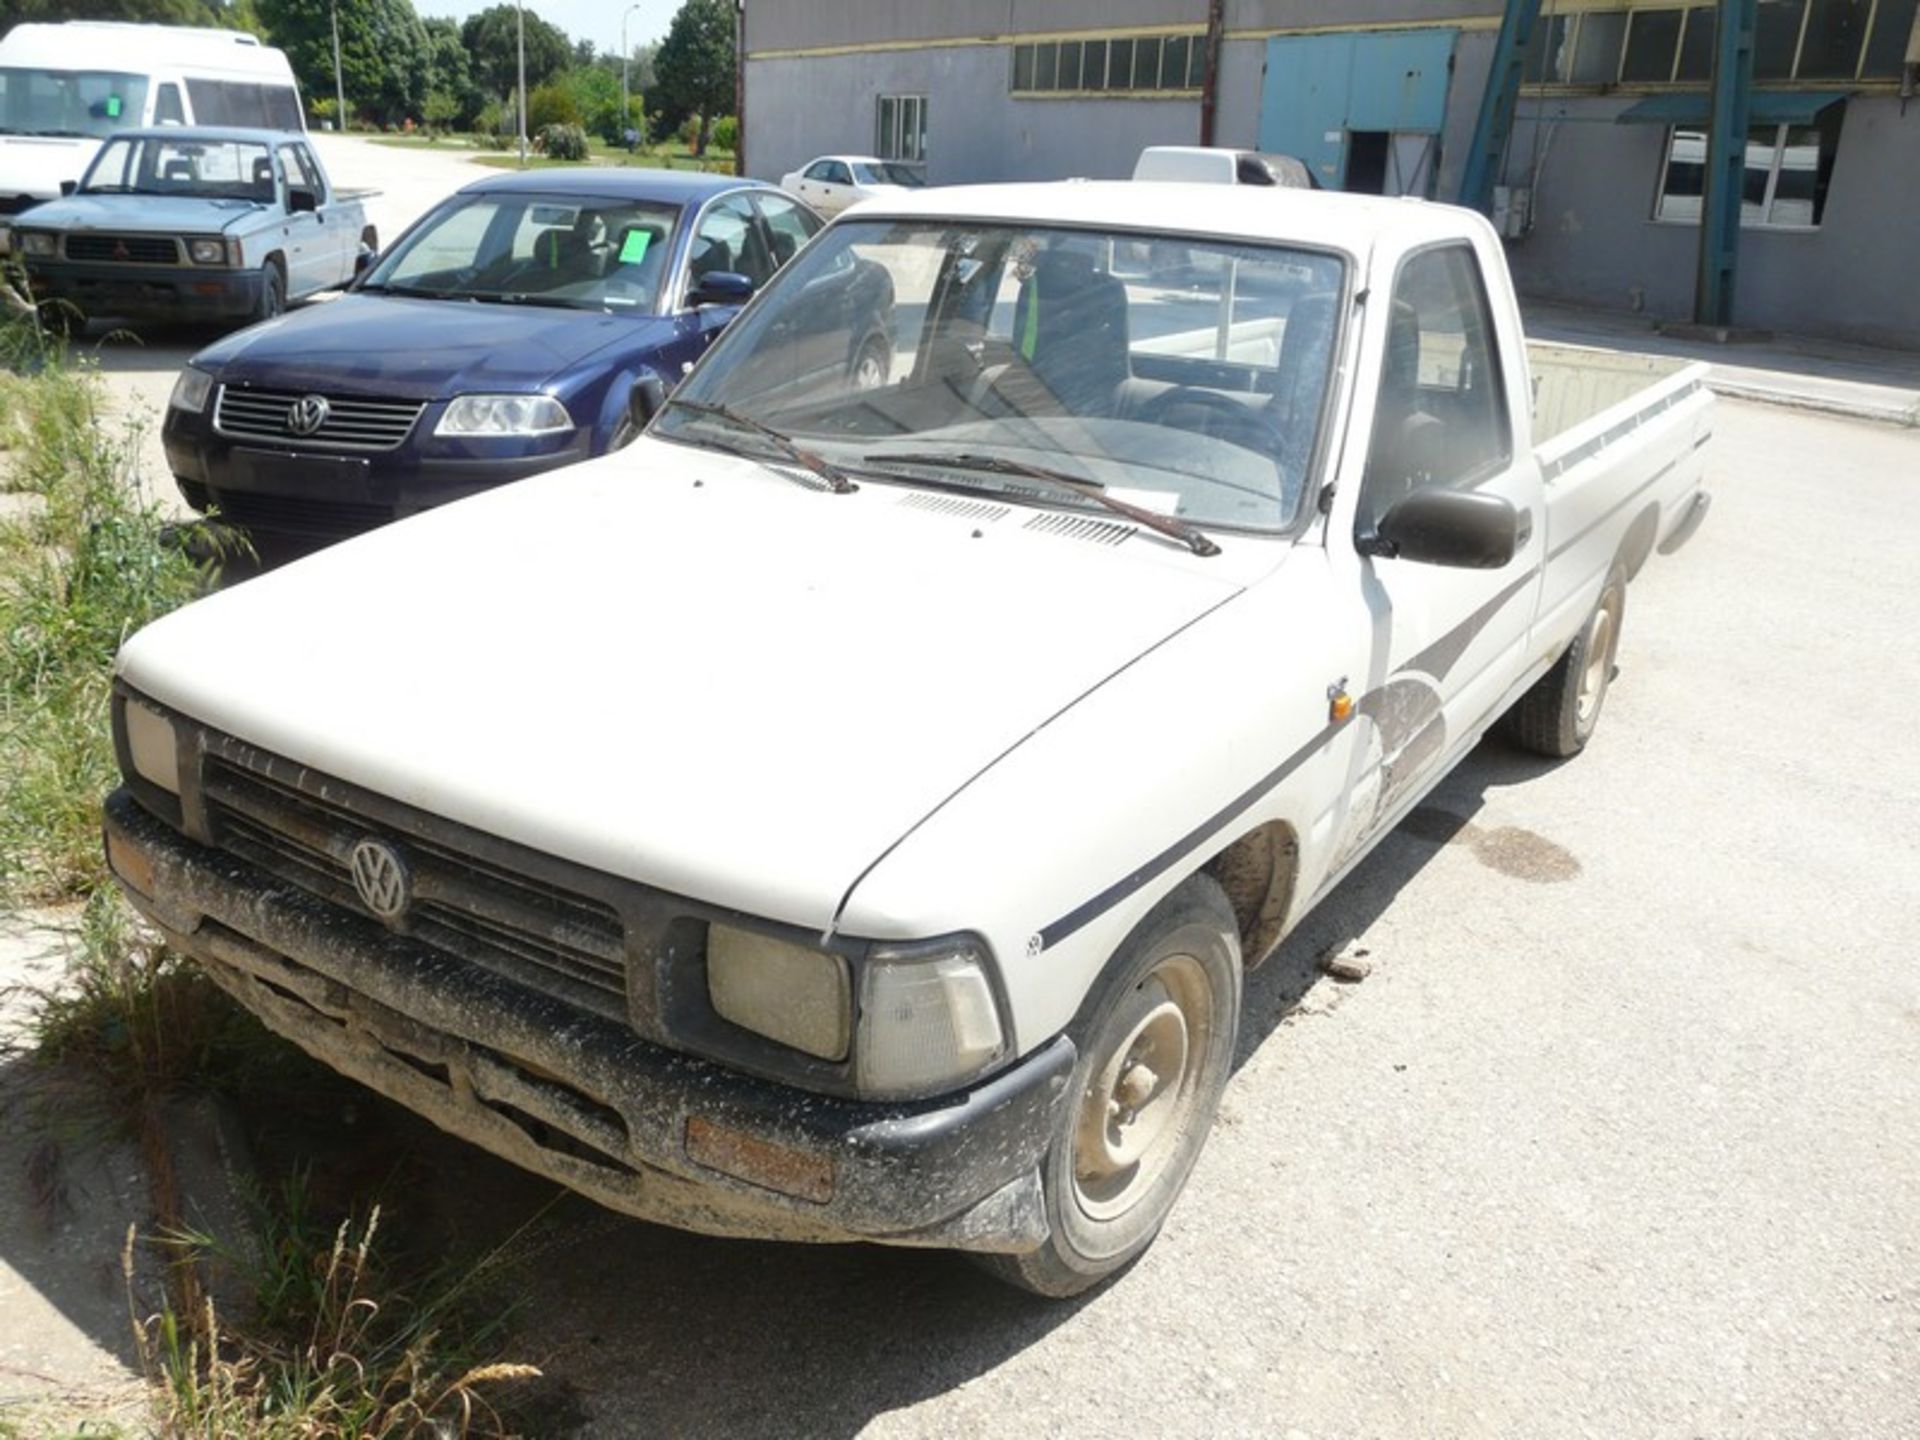 VW TARO 2,4D, KM: 295510, DIESEL, REG: NBY 4247,YEAR: 1996 (Located in Greece - Orestiada) Greek - Image 5 of 11